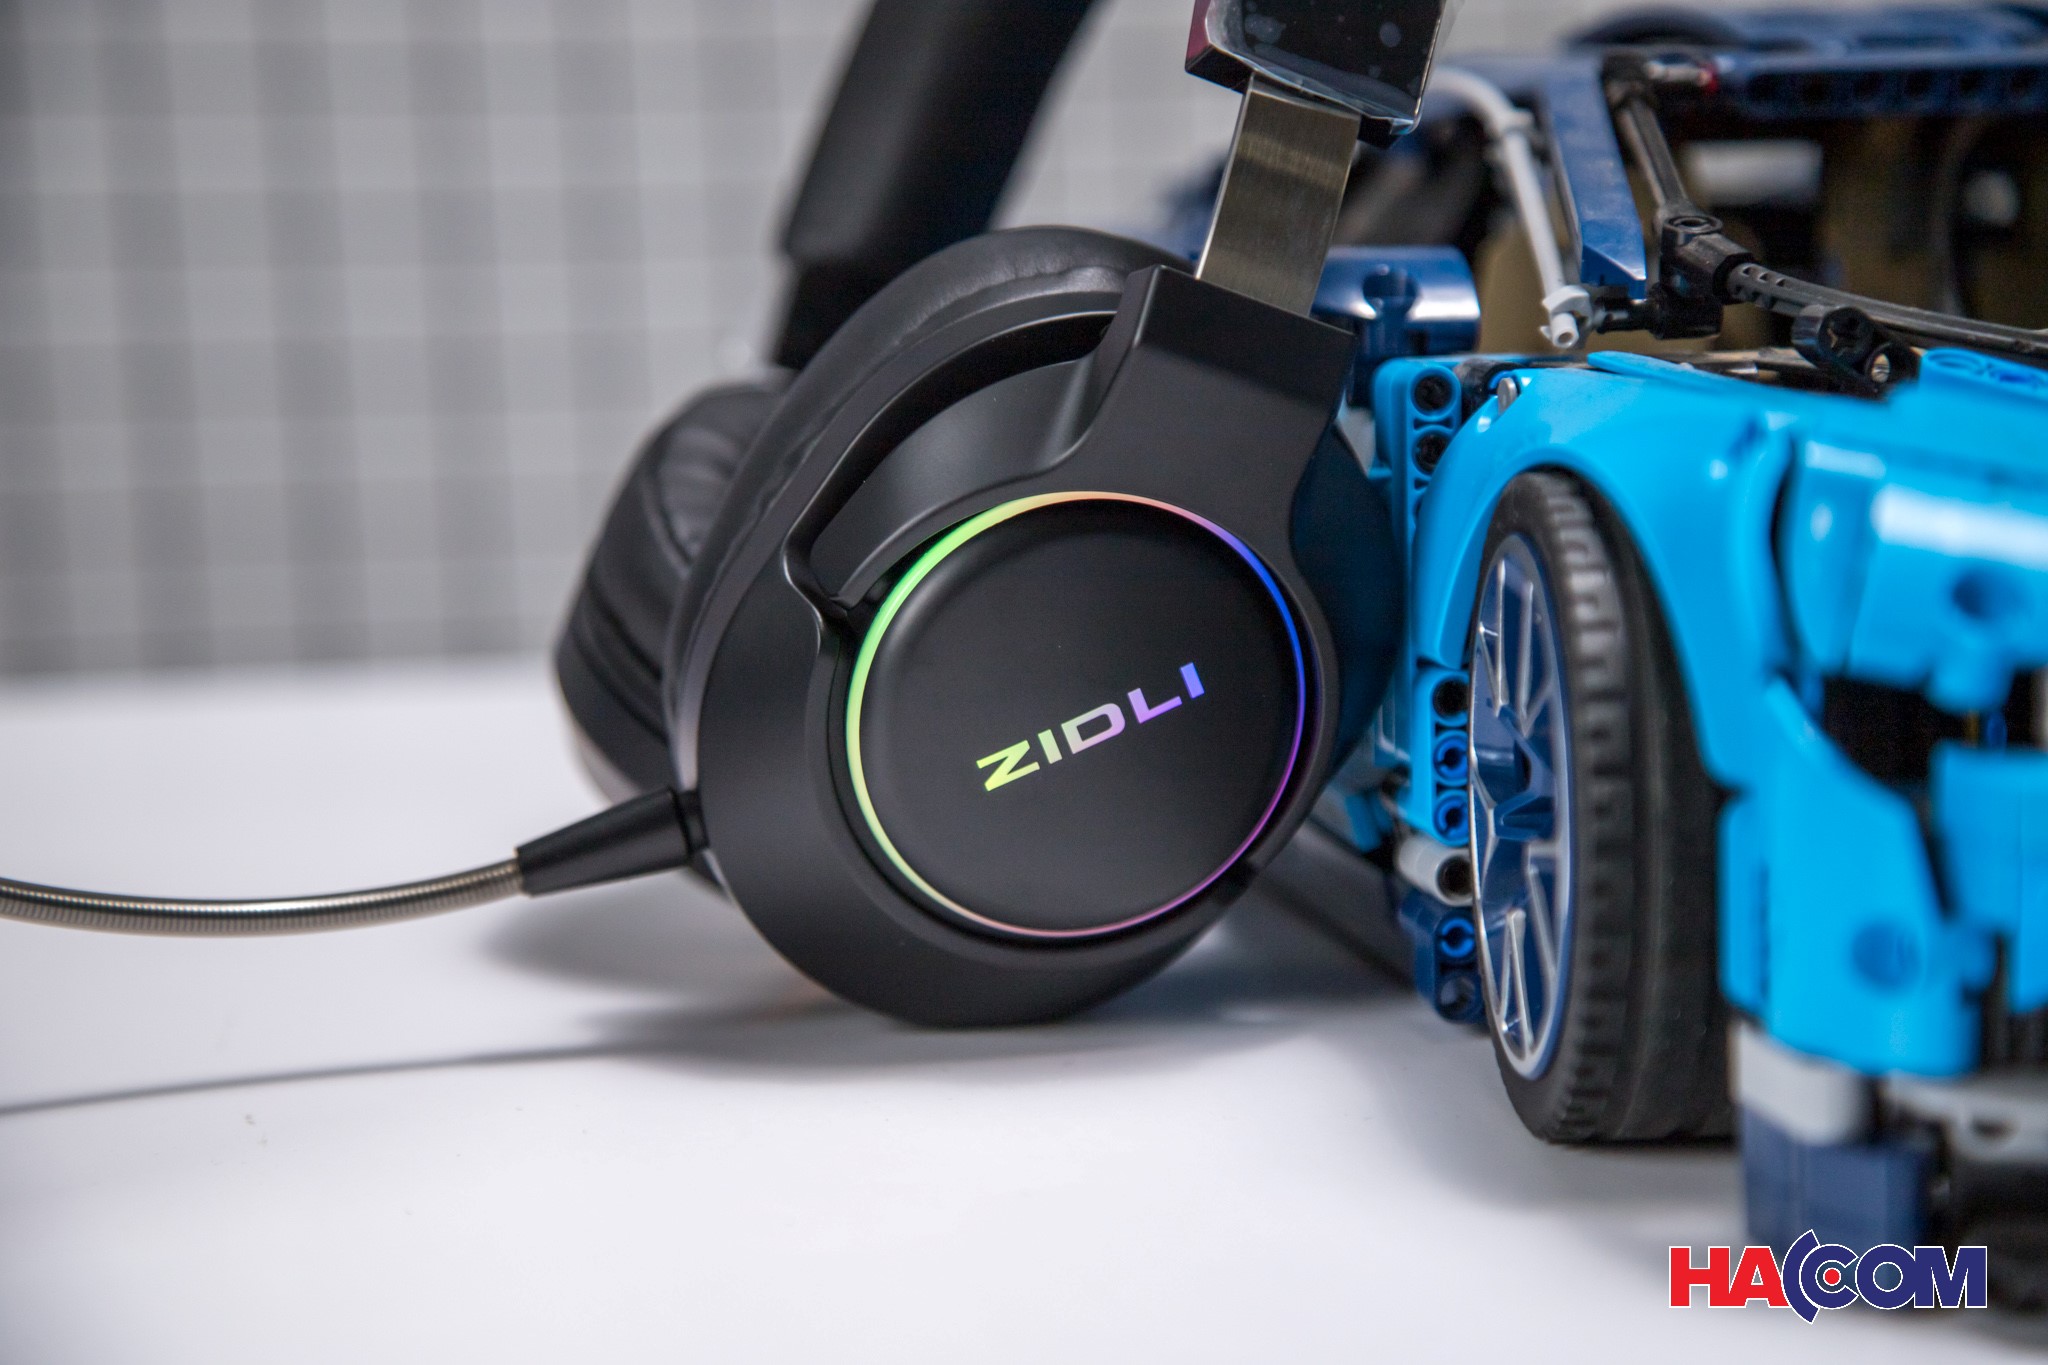 Tai nghe không dây Gaming Zidli LH1 Ultimate (7.1, 2.4G, LED RGB)